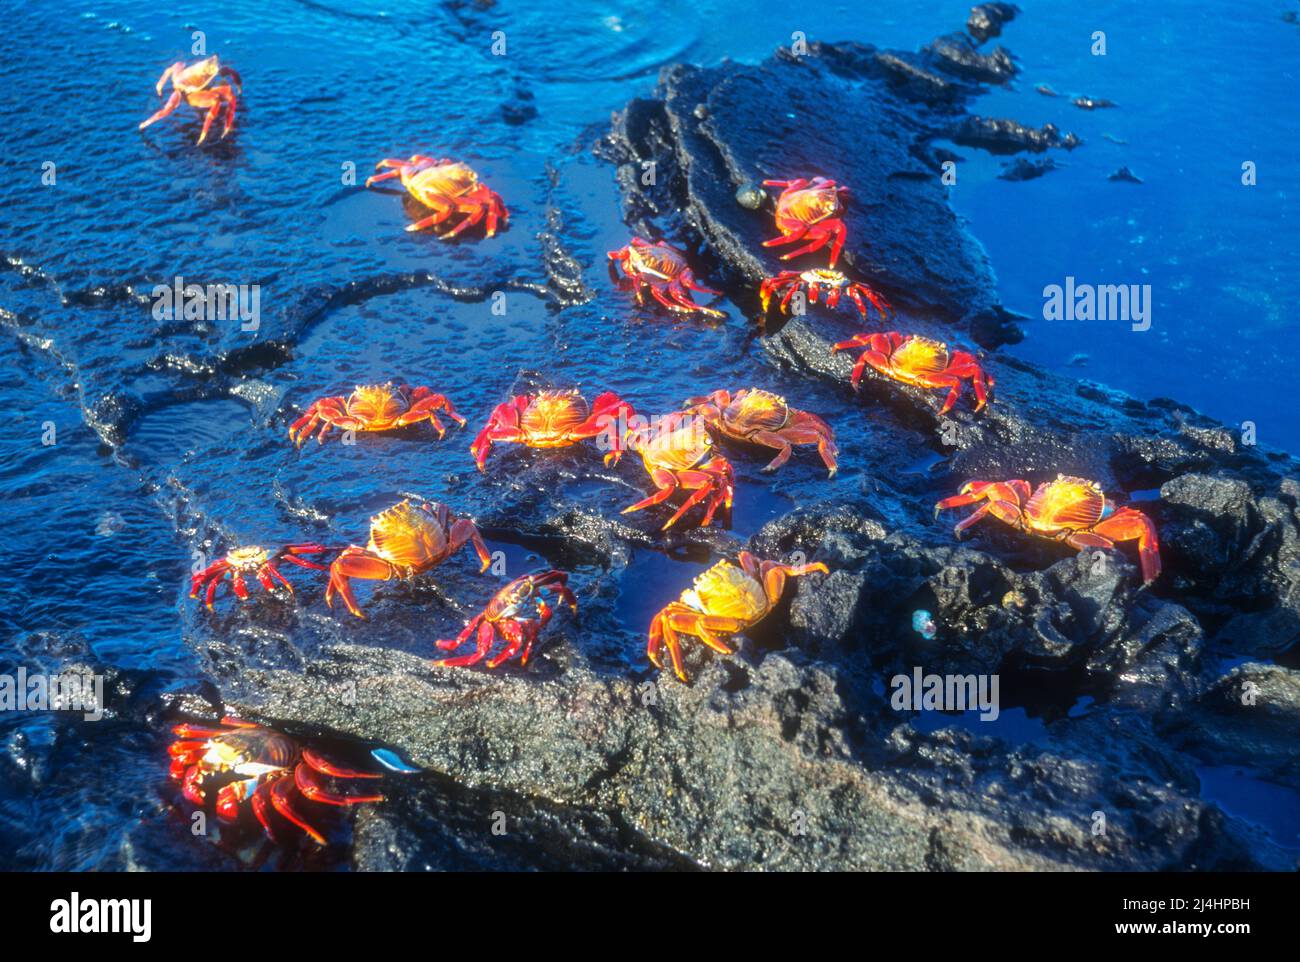 Amérique du Sud; Équateur; Îles Galapagos; vie marine; crustacés; Crabe; Sally Lightfoot Crab; Grapsus Banque D'Images